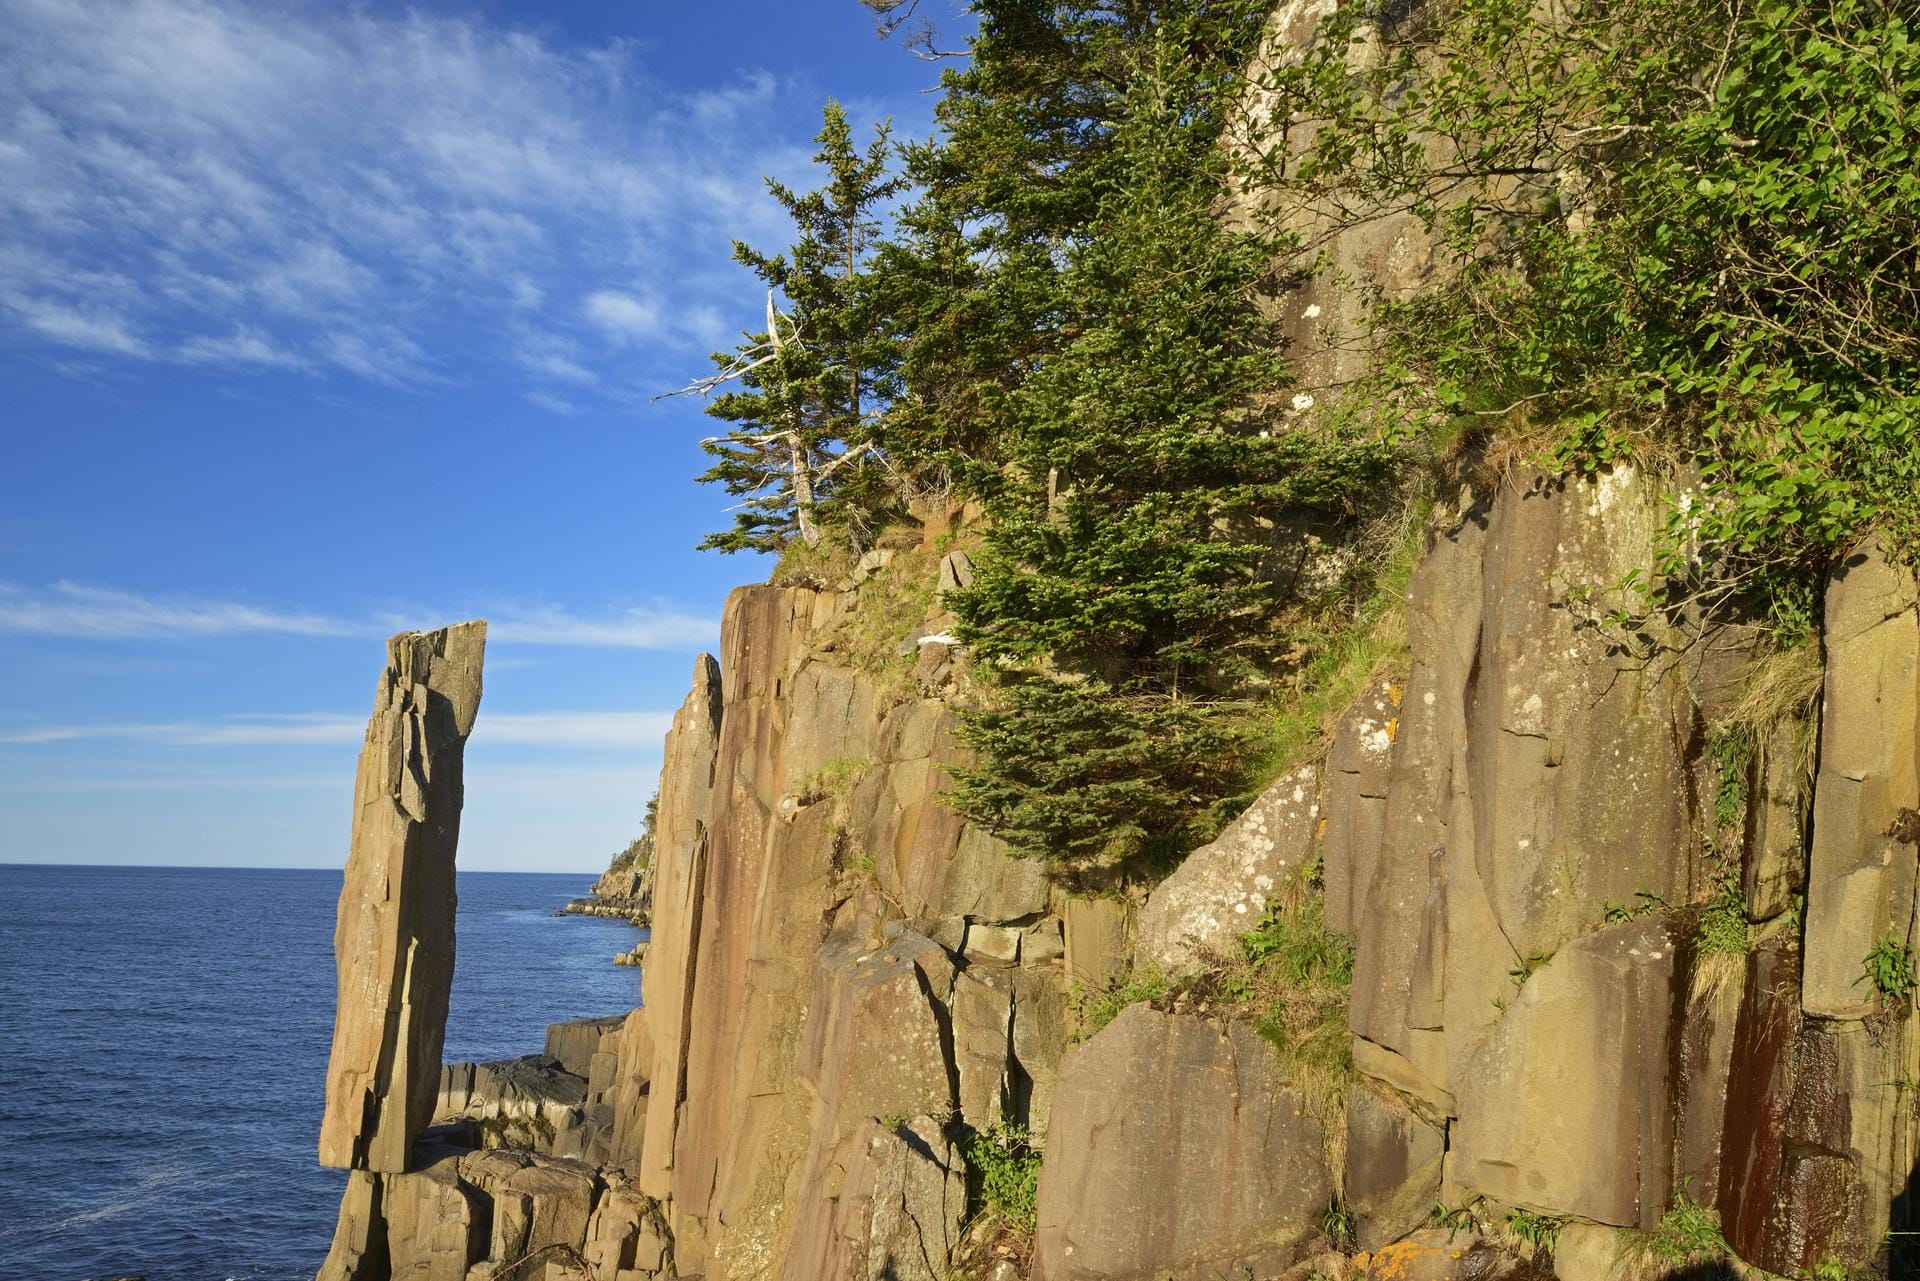 Über einen balancierenden Felsen verfügt auch Kanada. Diese spektakuläre Steinformation, die aussieht, als würde sie jeden Augenblick ins Meer stürzen, befindet sich in Digby, Nova Scotia.